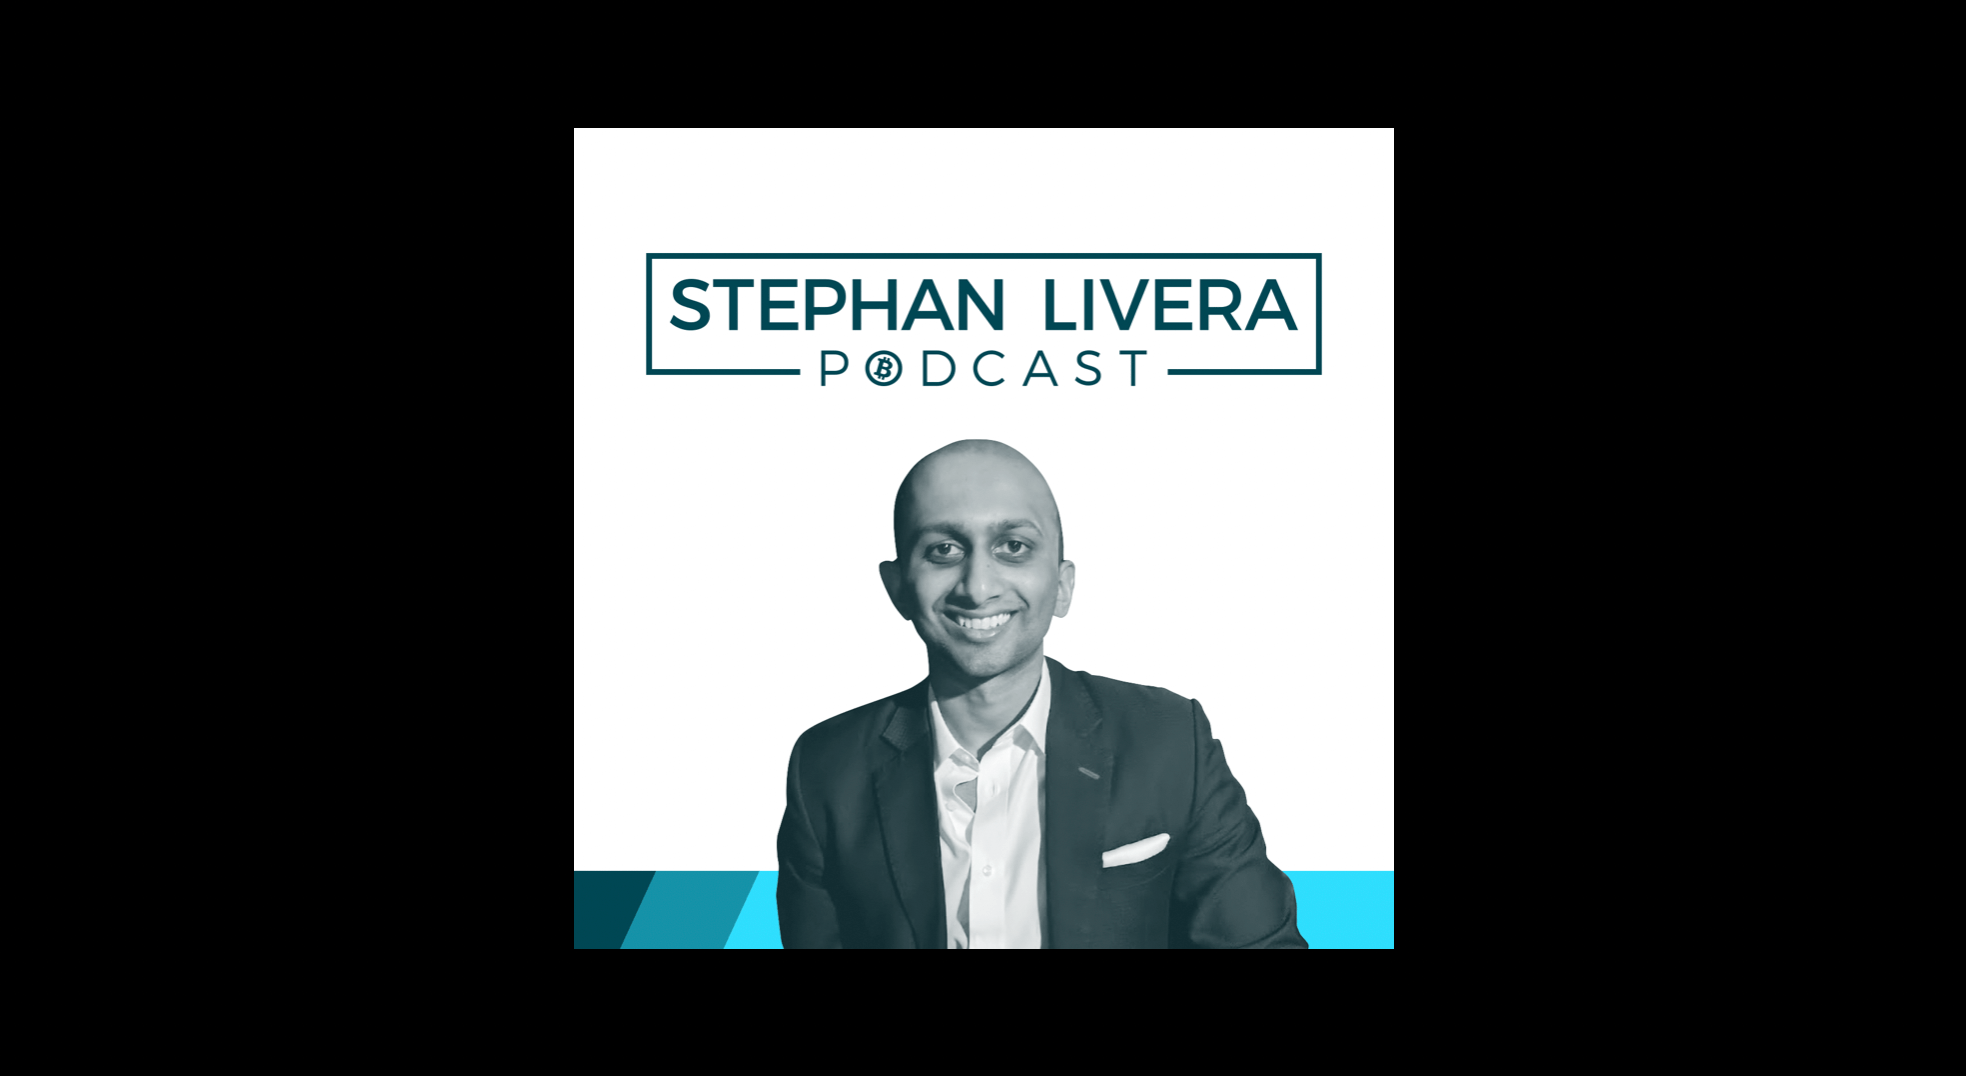 Stephan Livera Podcast